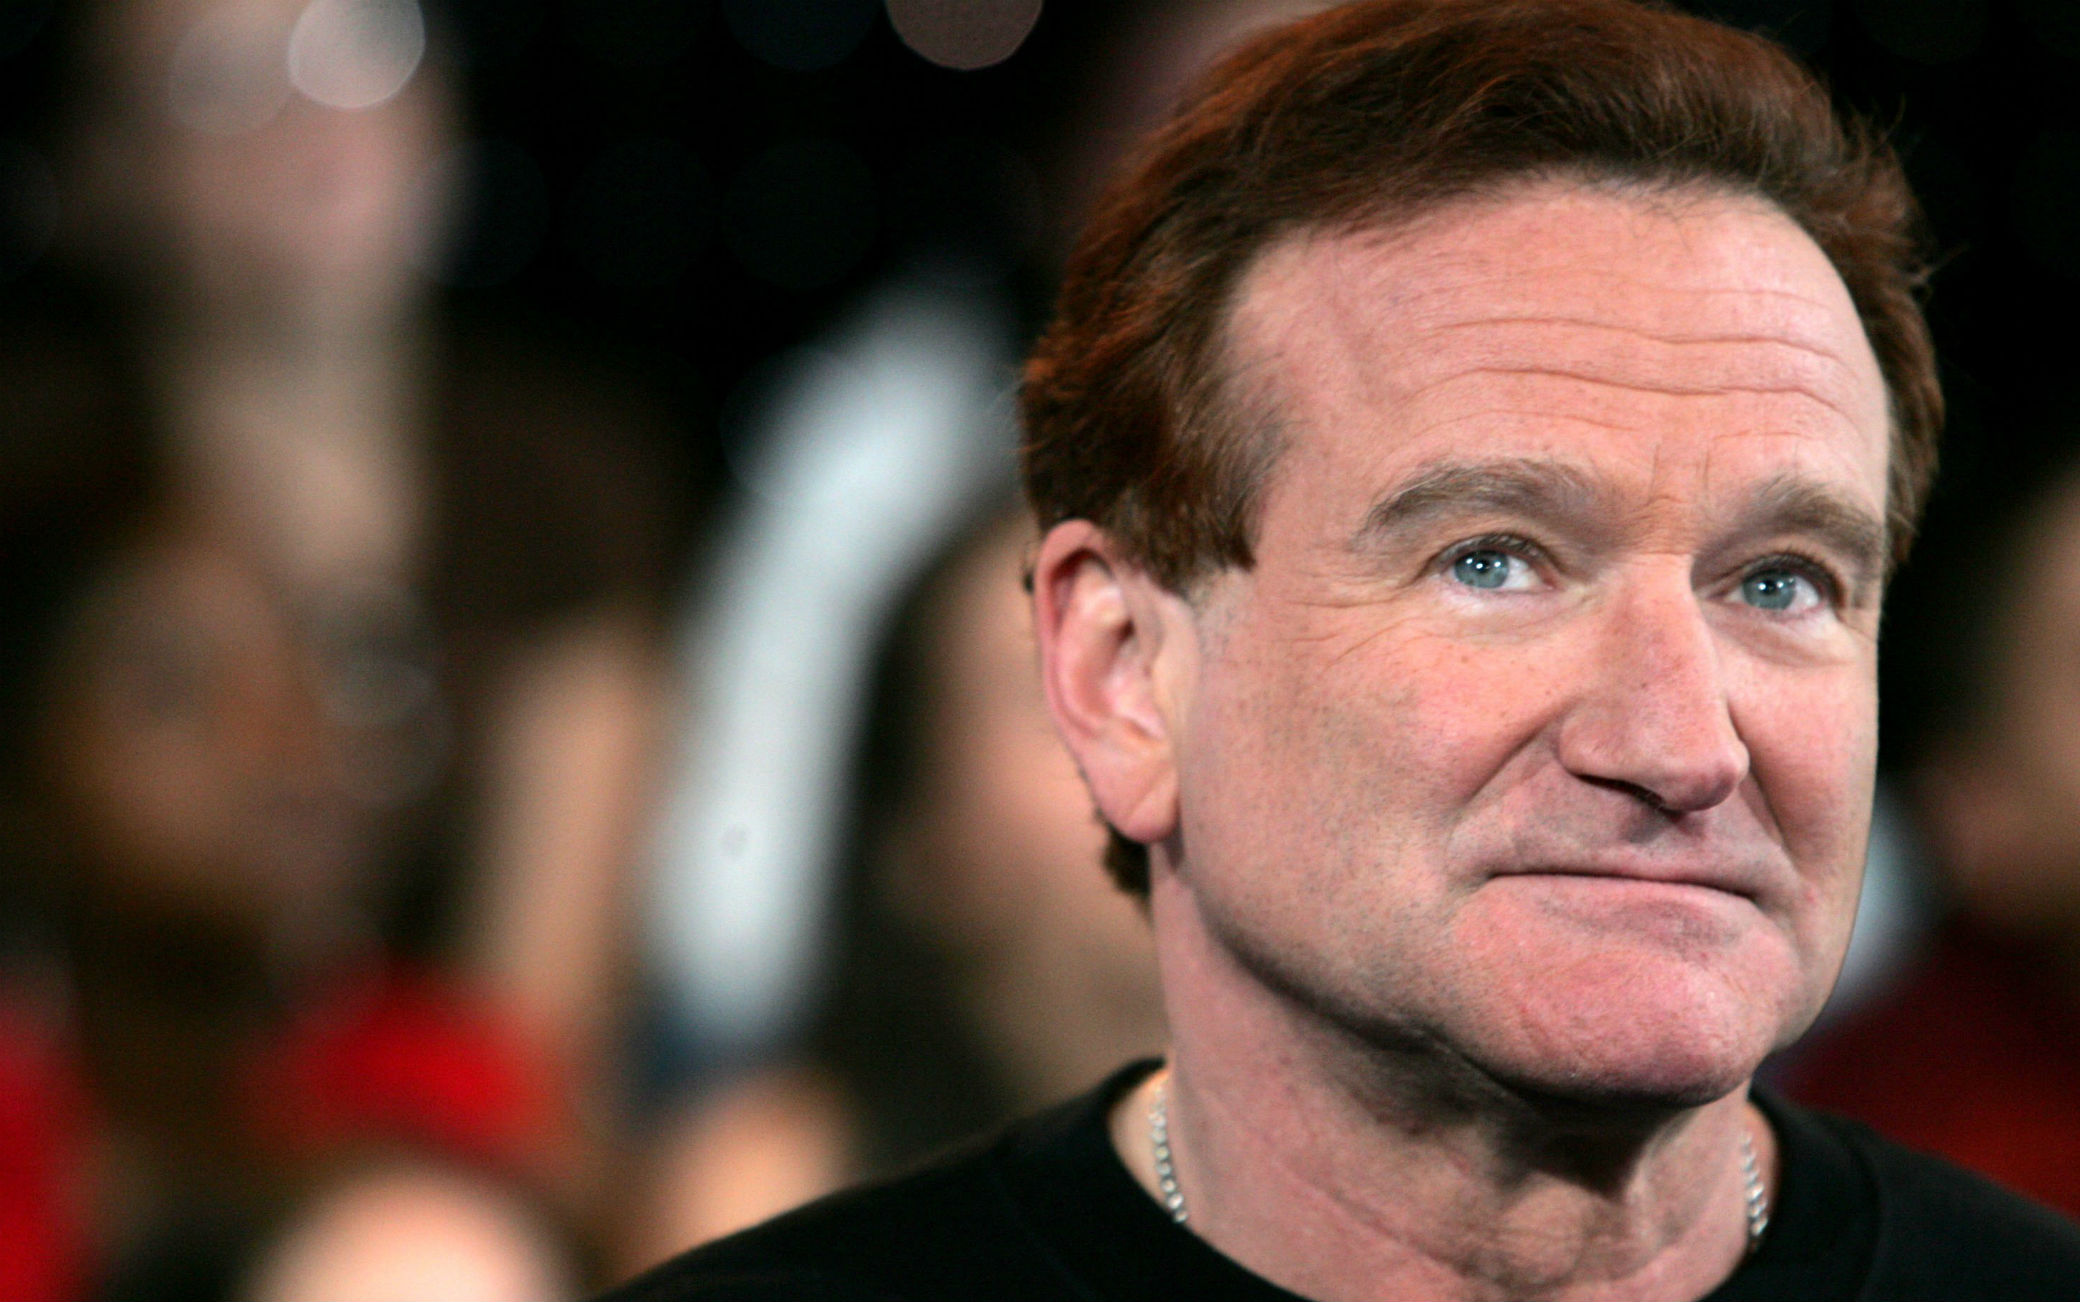 Le migliori frasi, citazioni e aforismi più divertenti su Robin Williams